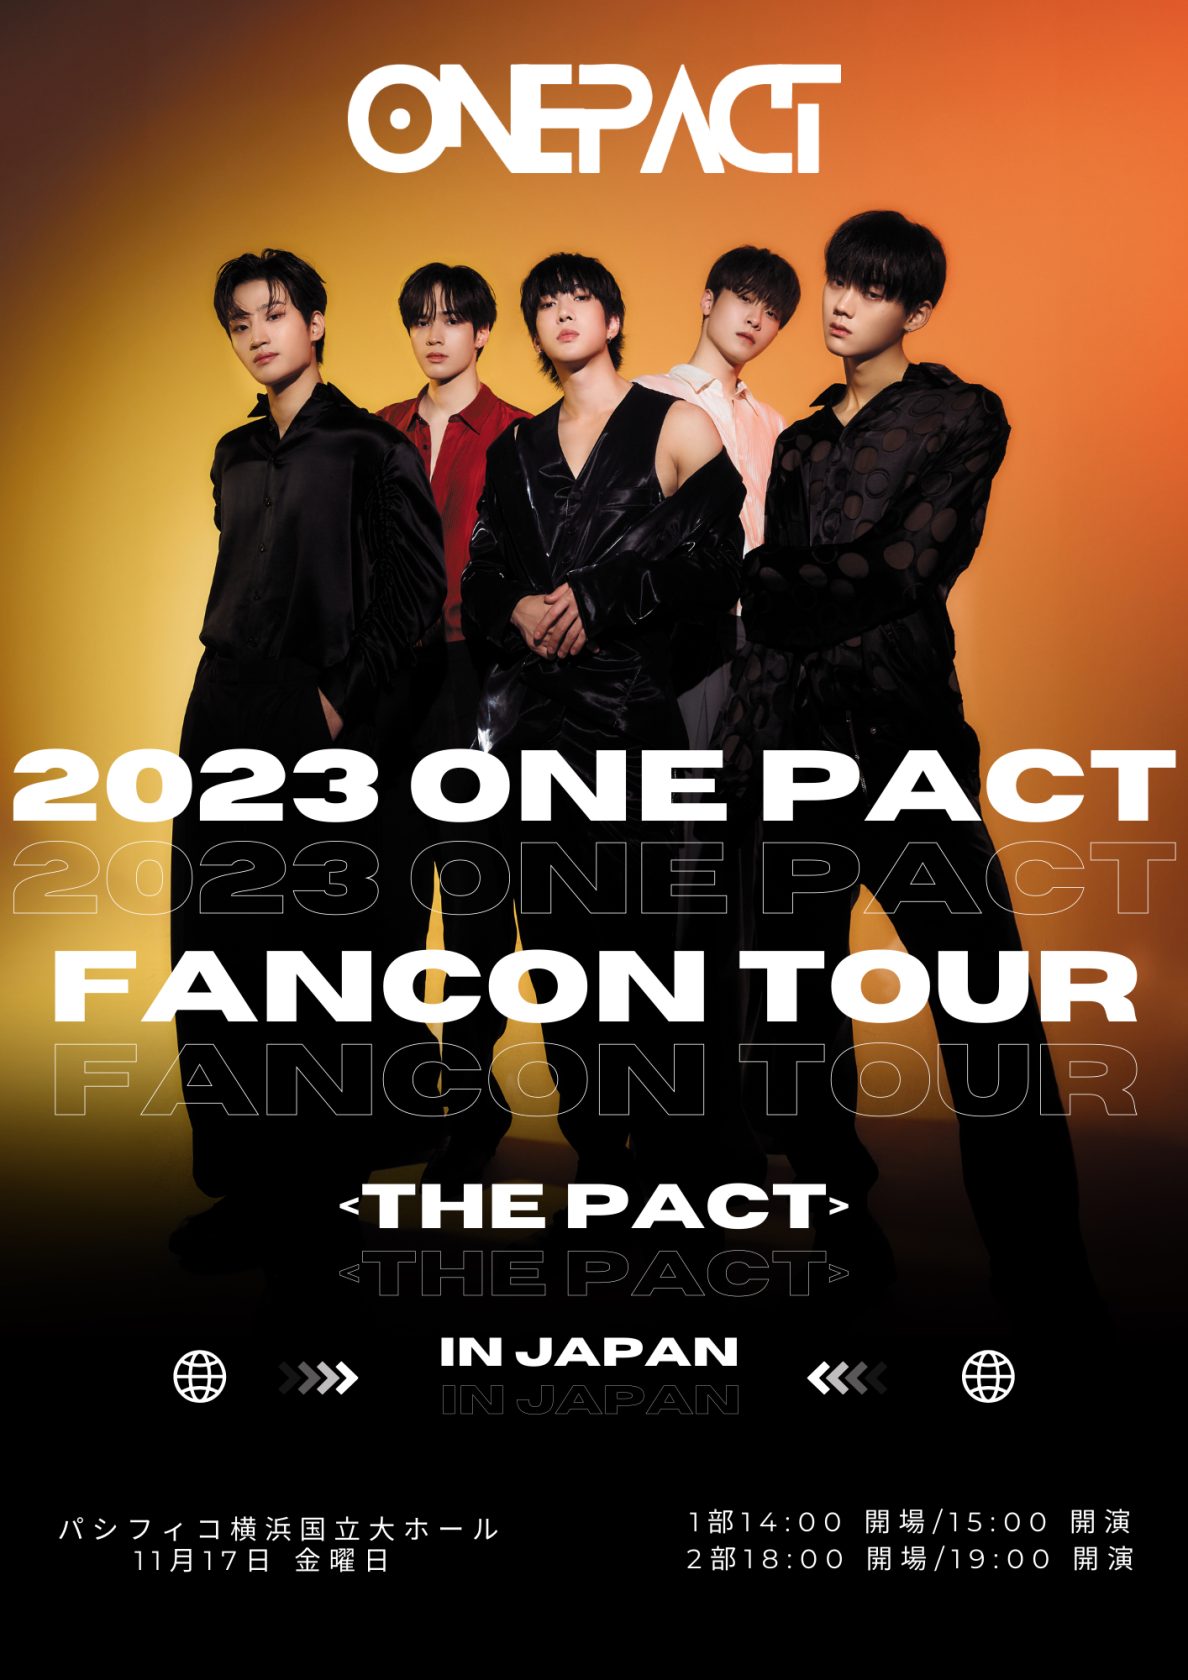 ボイプラ出演の5人組「ONE PACT」 日本公演の新ポスター解禁